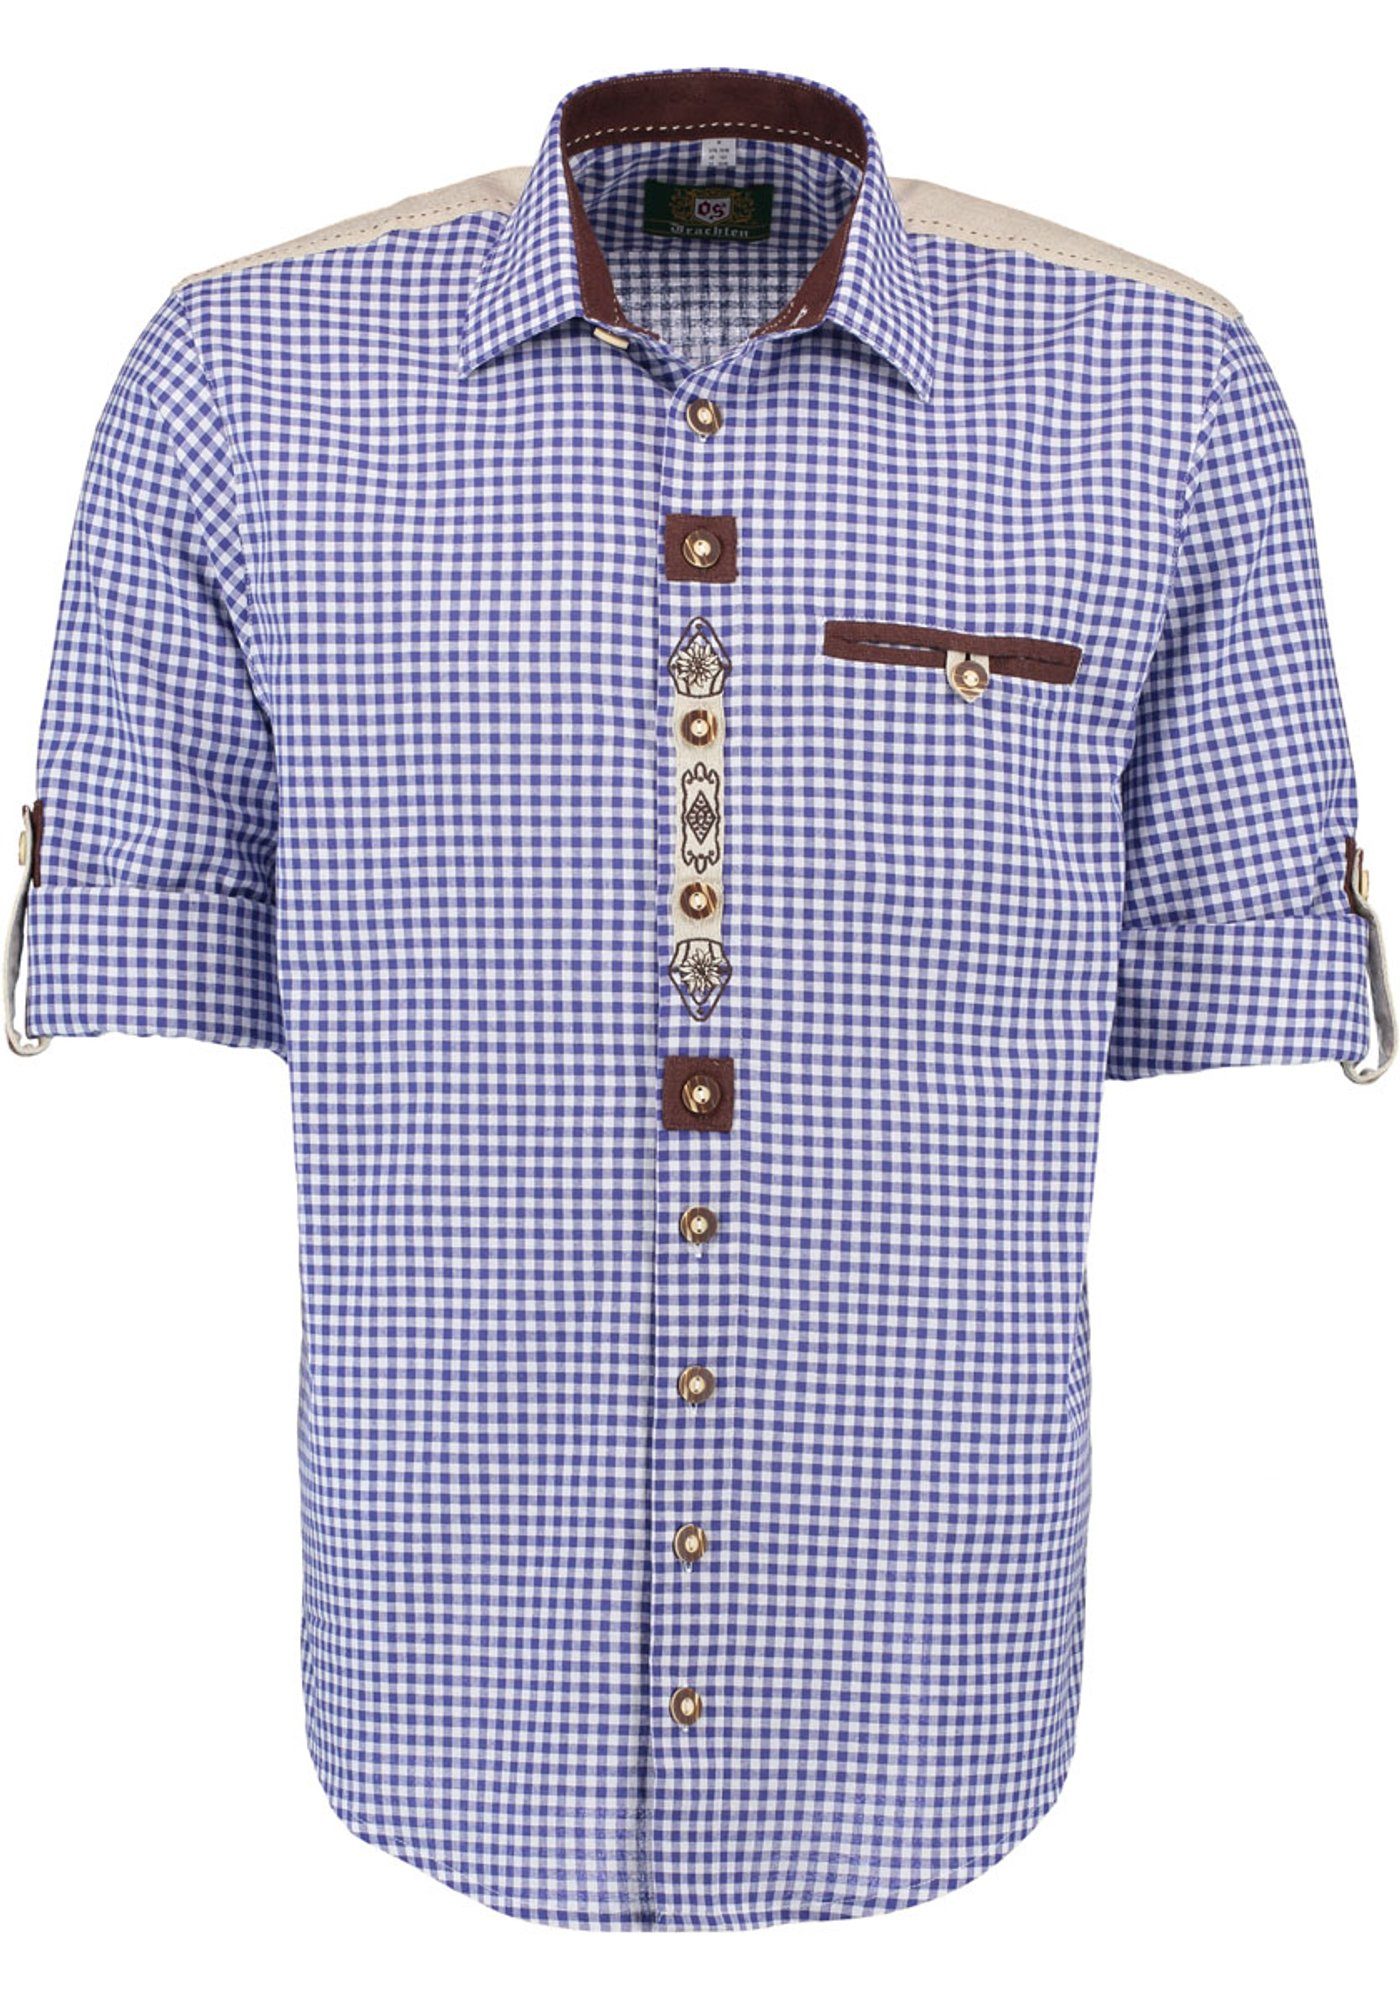 kornblau Langarmhemd Stickerei Ozido der mit Knopfleiste OS-Trachten auf Trachtenhemd